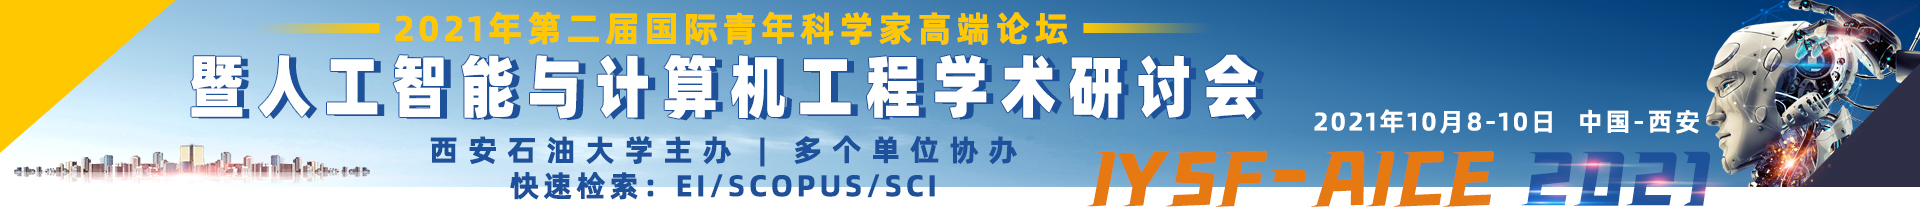 10月西安IYSF-AICE2021-学术会议云-何霞丽-20210526 - 副本.jpg